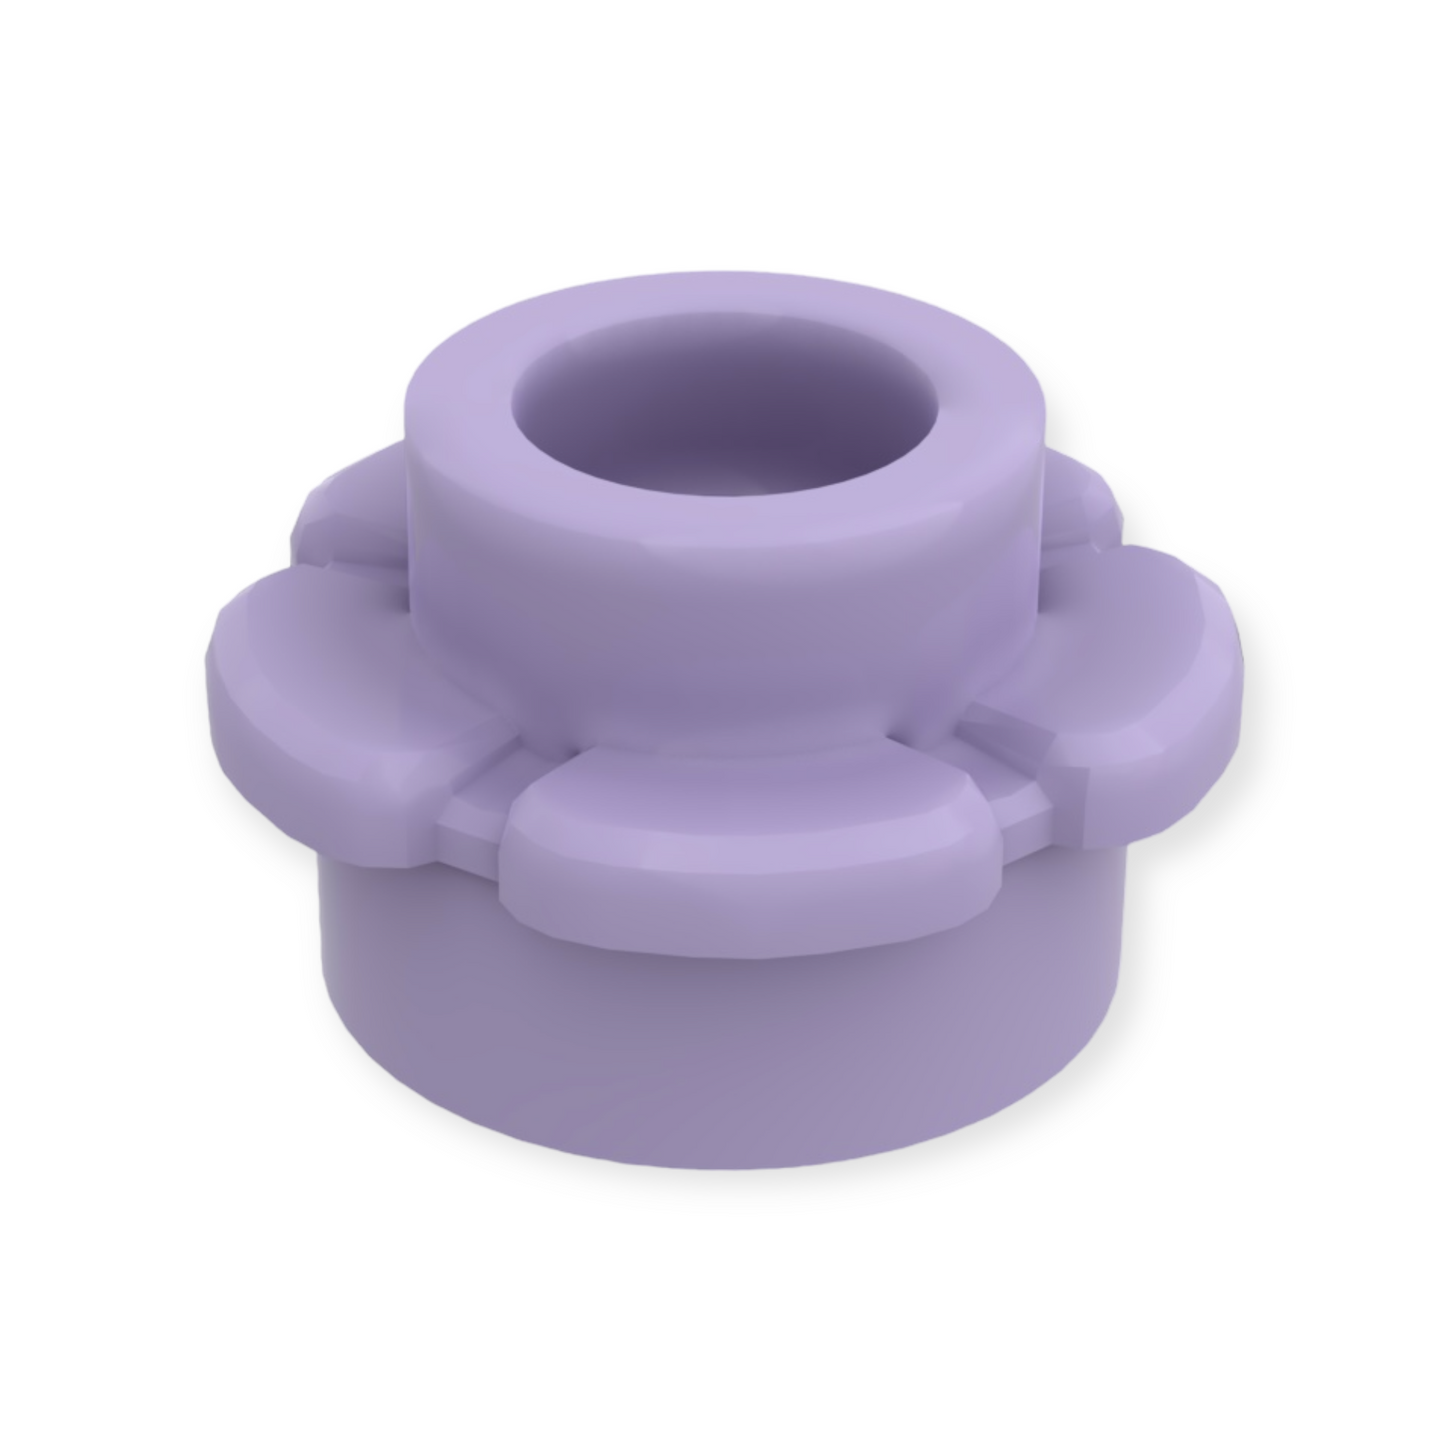 LEGO Plate Round 1x1 Flower - Medium Lavender